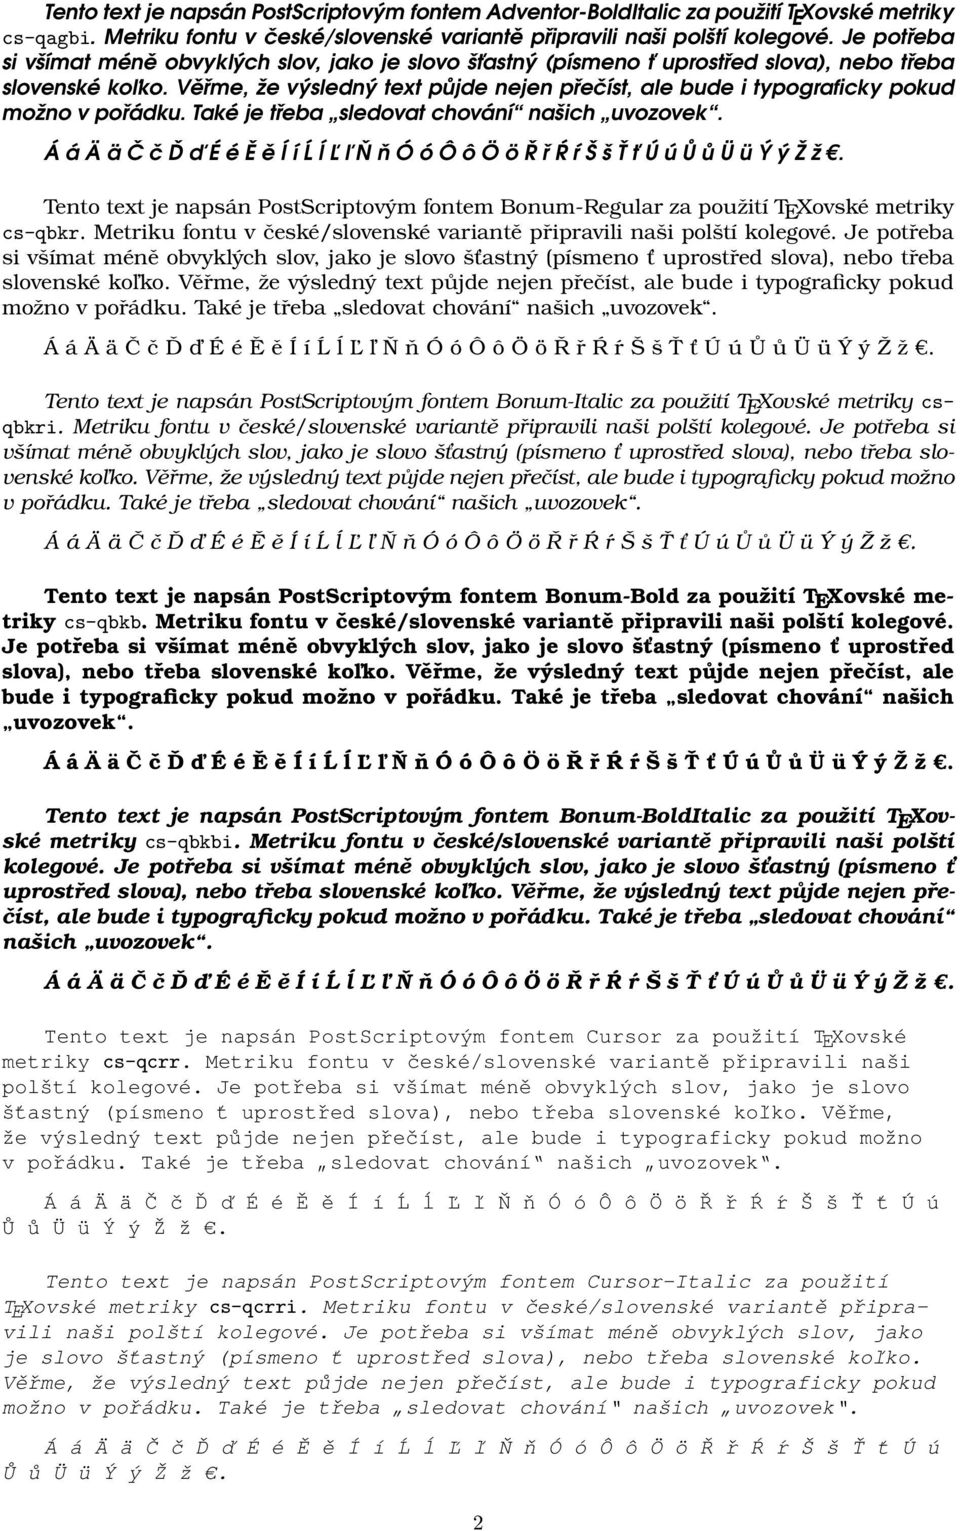 Metriku fontu v české/slovenské variantě připravili naši polští kolegové. Je potřeba slovenské koľko. možno Tento text je napsán PostScriptovým fontem Bonum-Italic za použití TEXovské metriky csqbkri.